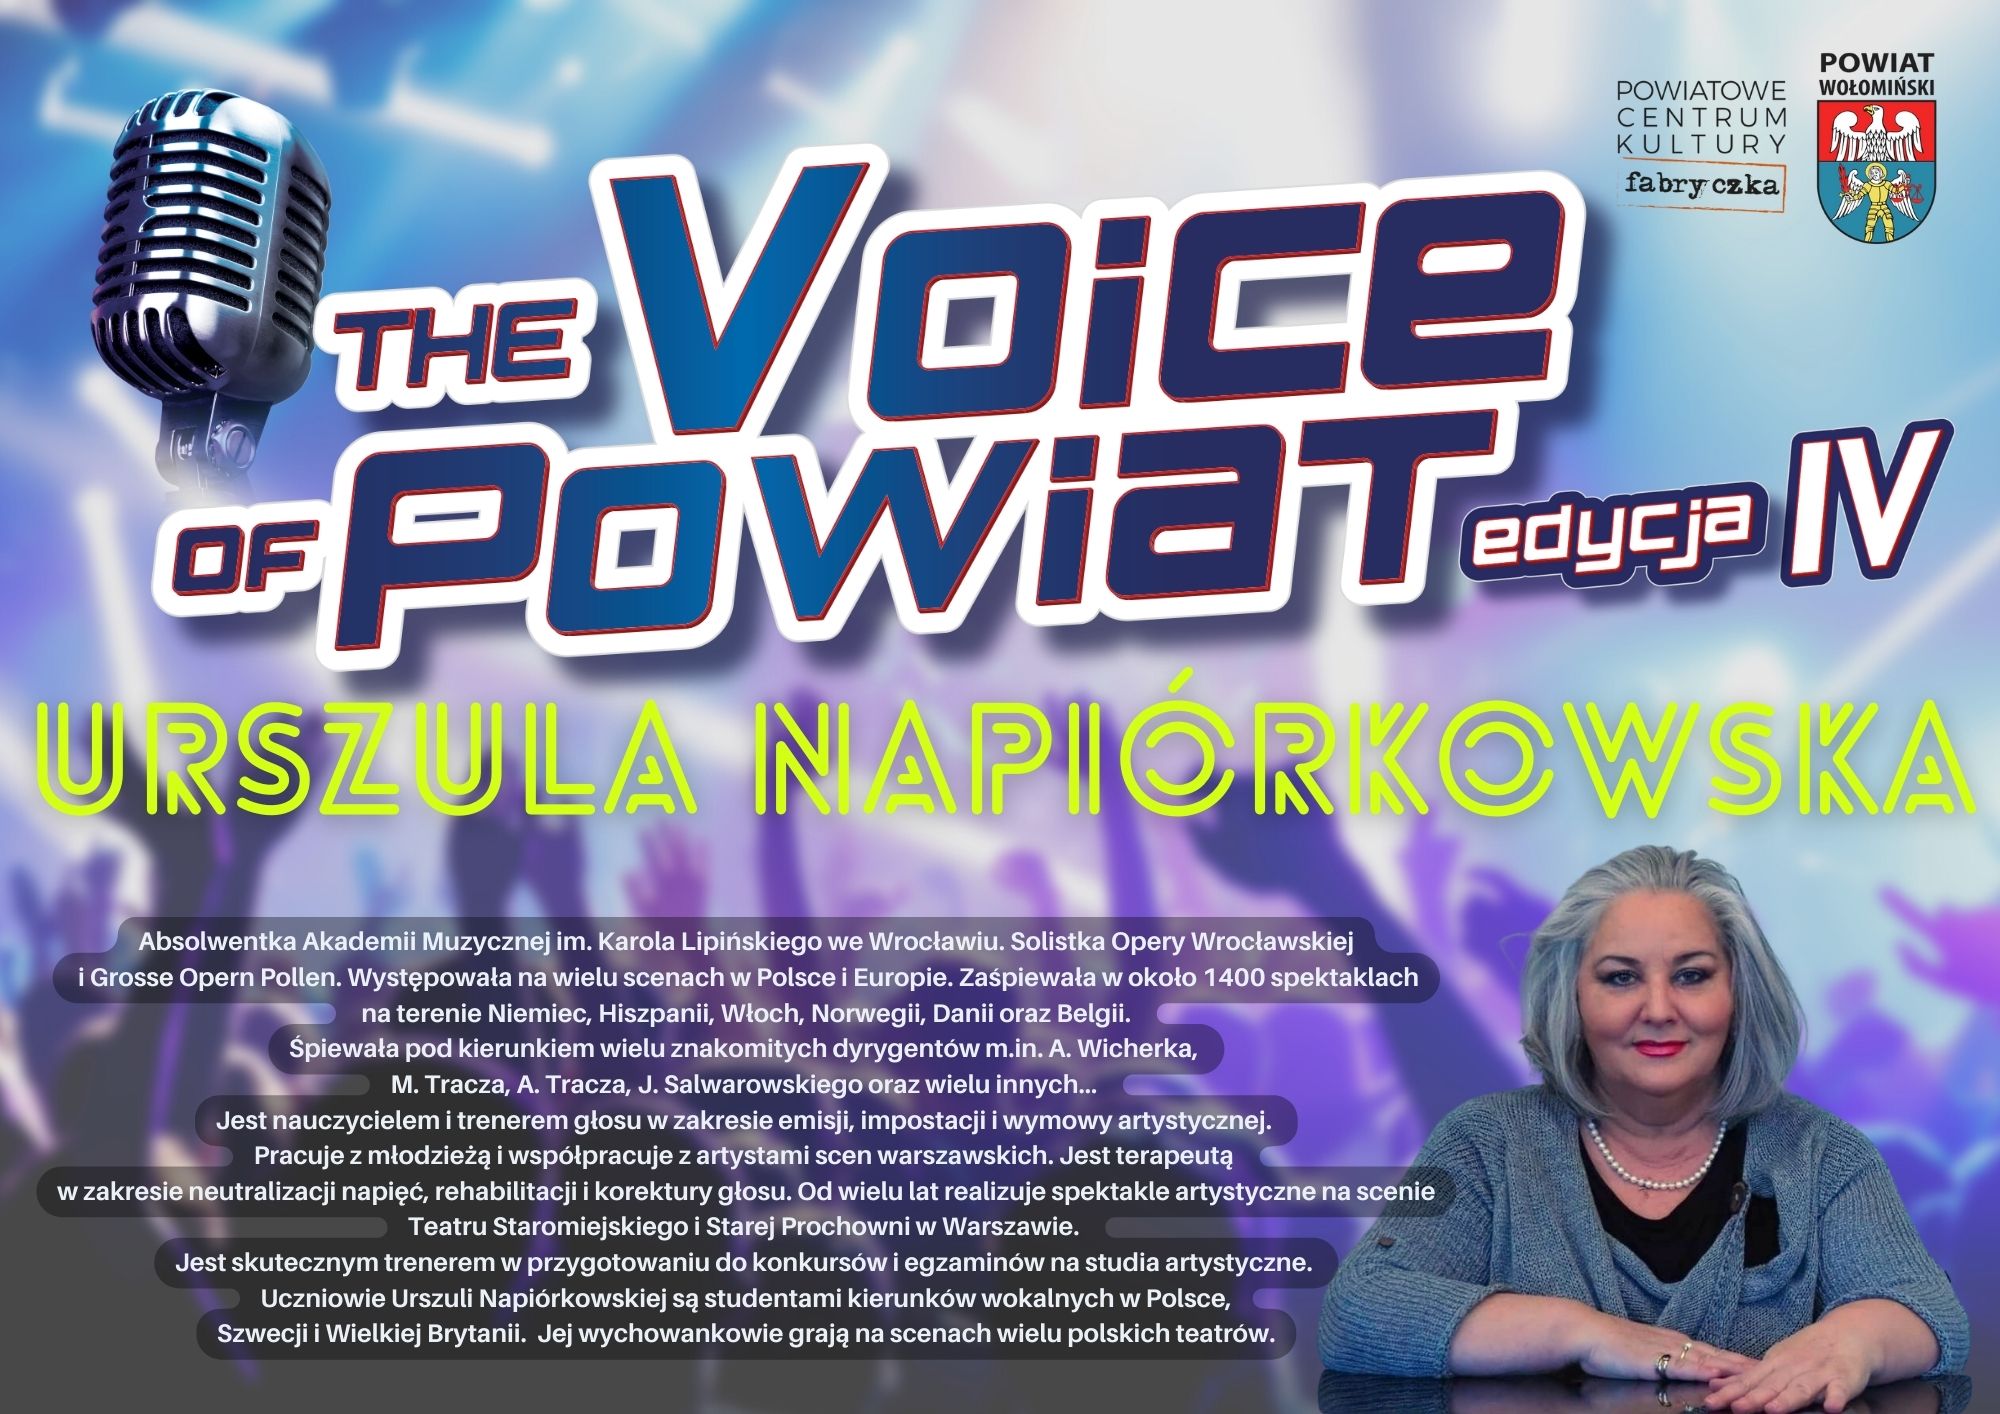 Zbliża się IV edycja The Voice of Powiat!